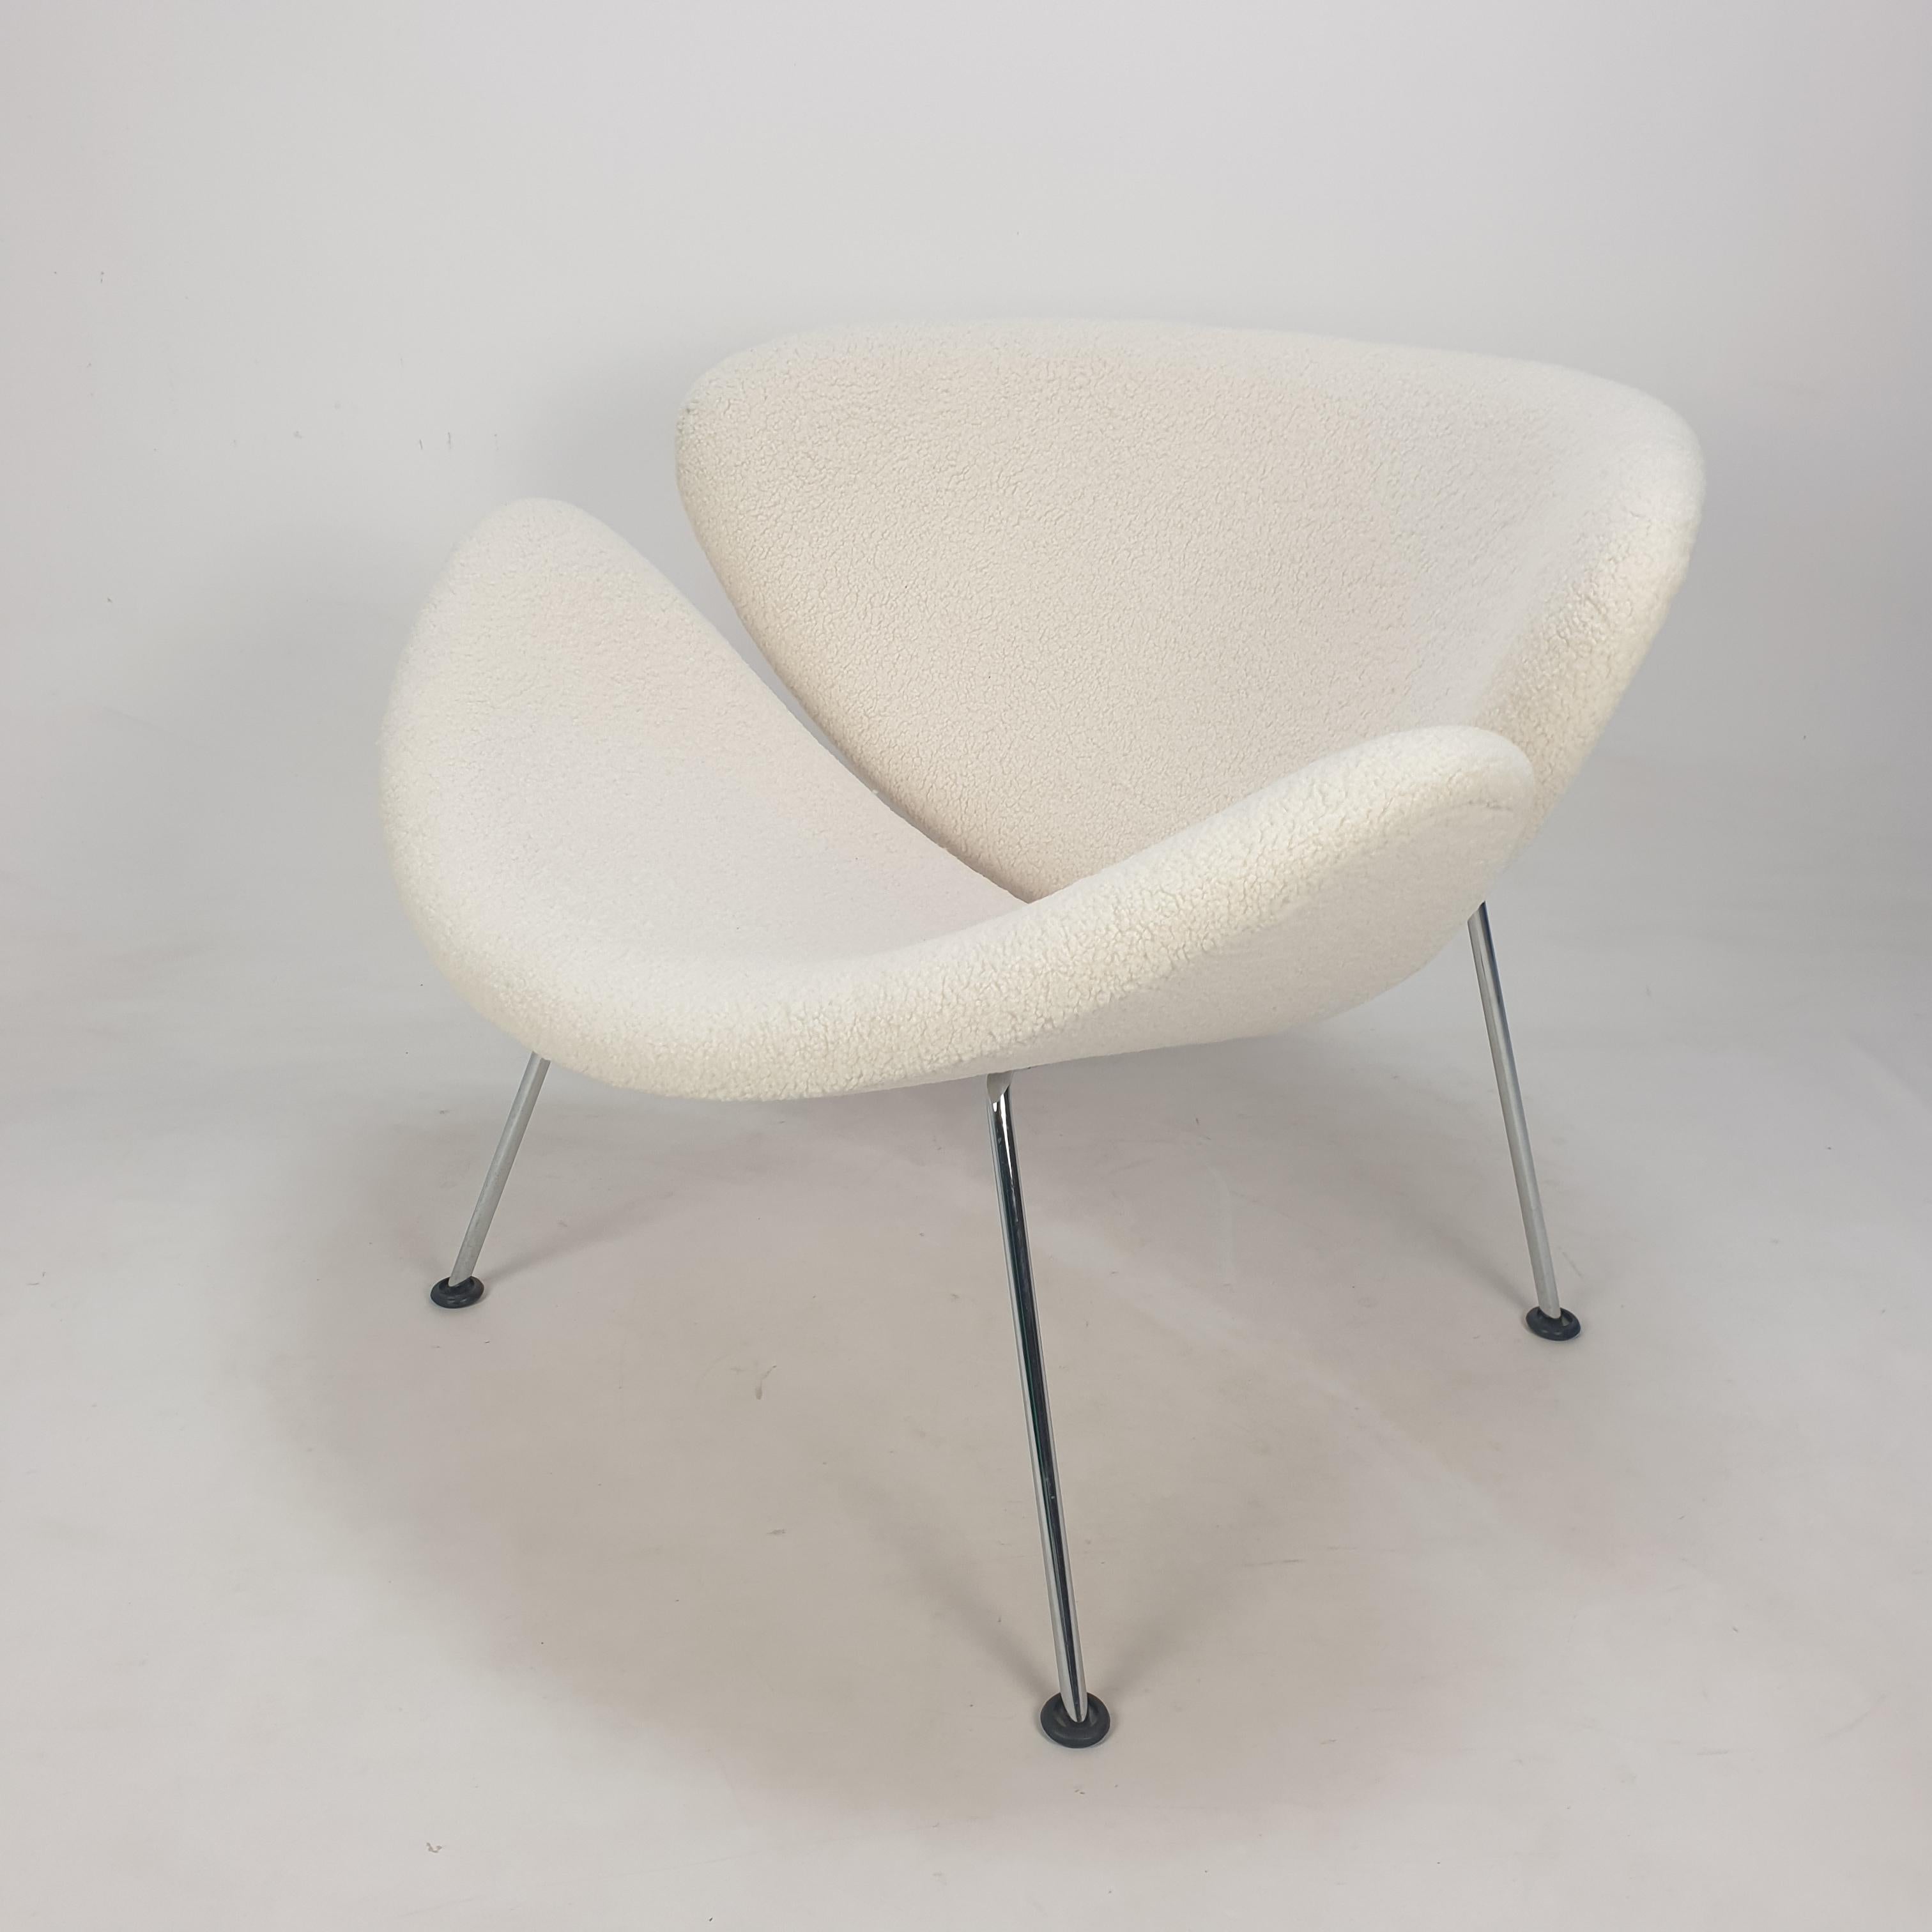 La célèbre chaise à tranches d'orange Artifort de Pierre Paulin. 
Conçue dans les années 60 et produite dans les années 80. 

Chaise mignonne et très confortable. 
Les pieds sont en métal chromé. 

La chaise a une nouvelle mousse et vient